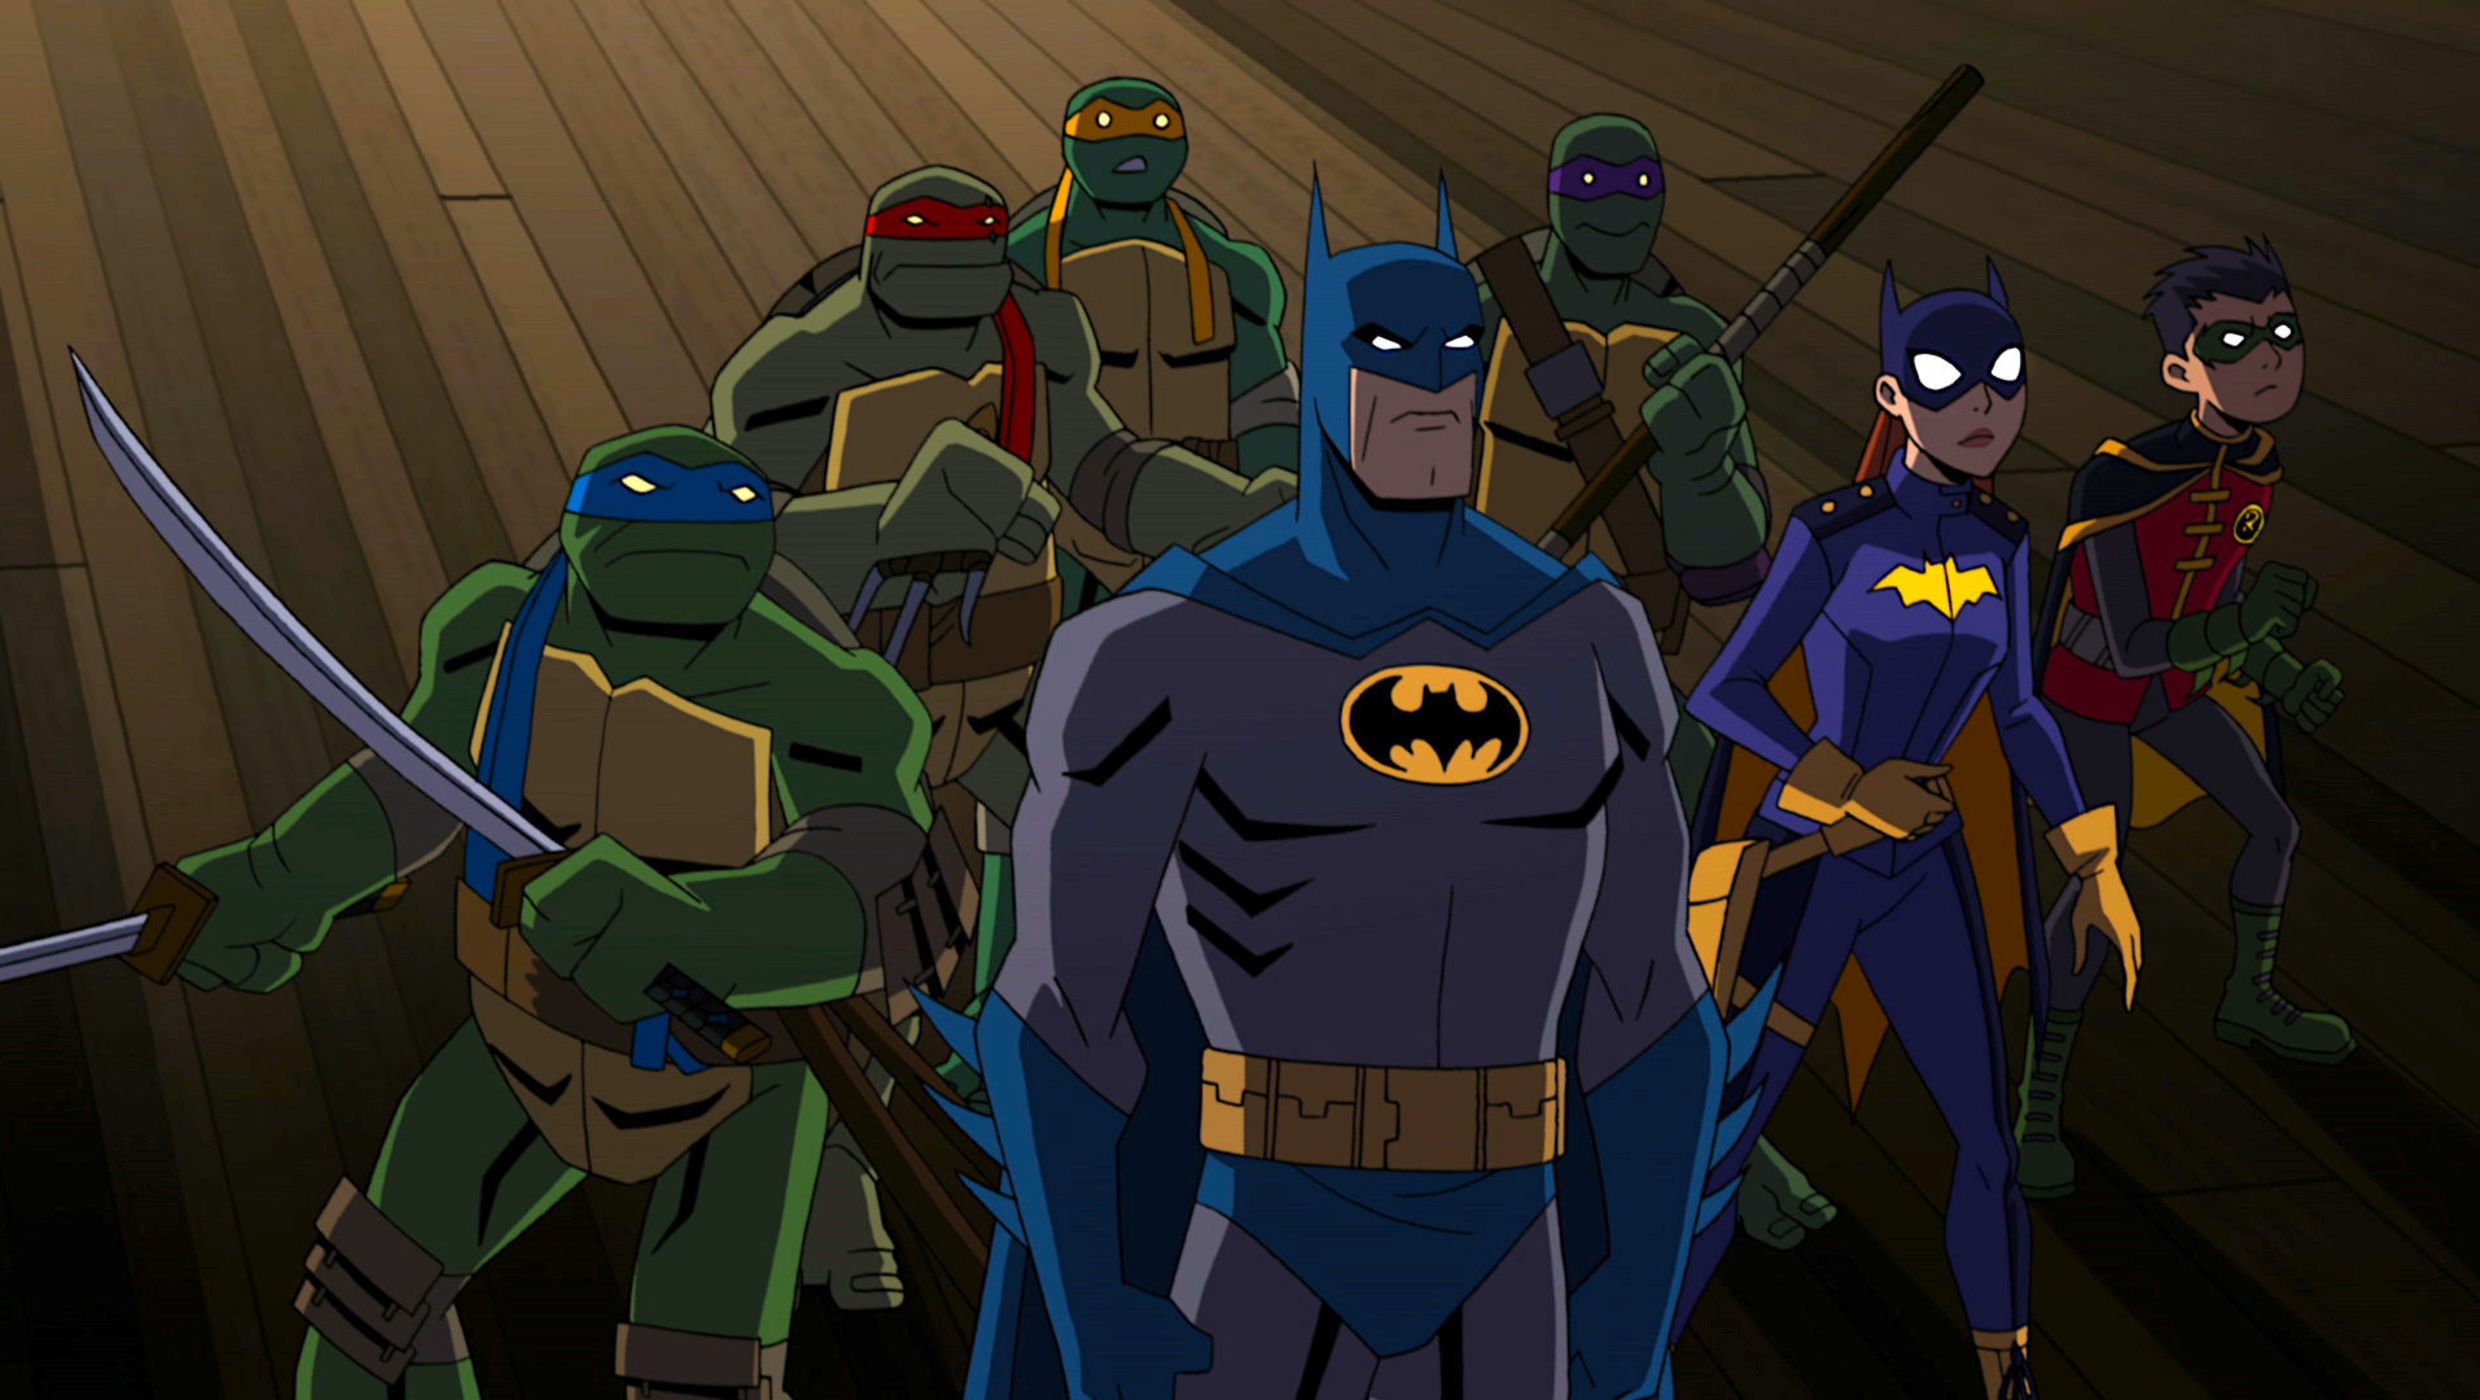 Batman Vs Teenage Mutant Ninja Turtles